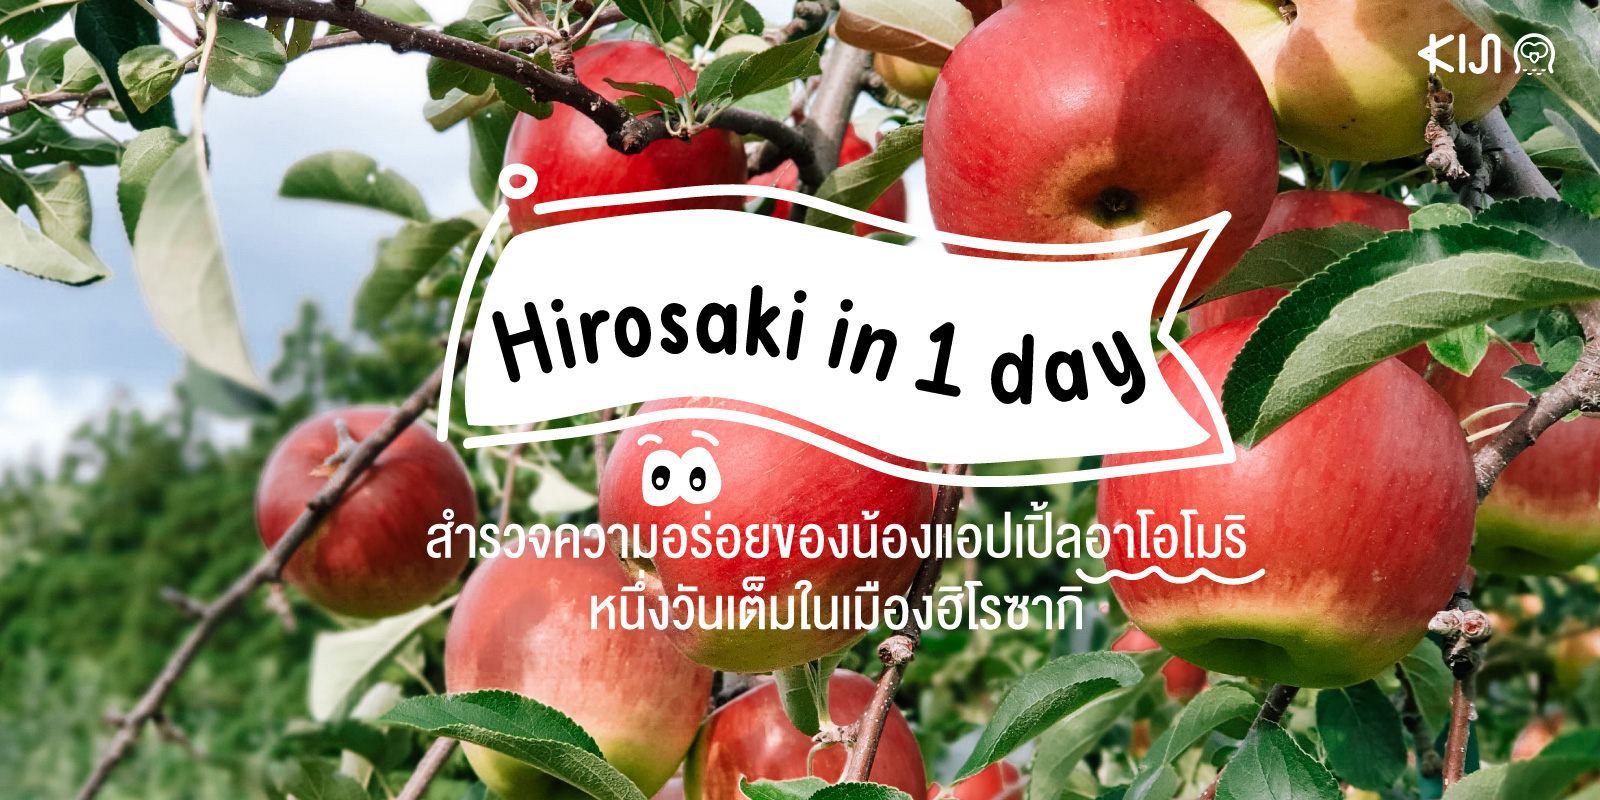 เที่ยวฮิโรซากิ (Hirosaki) พร้อมทานเมนูแอปเปิ้ลแบบจัดเต็ม